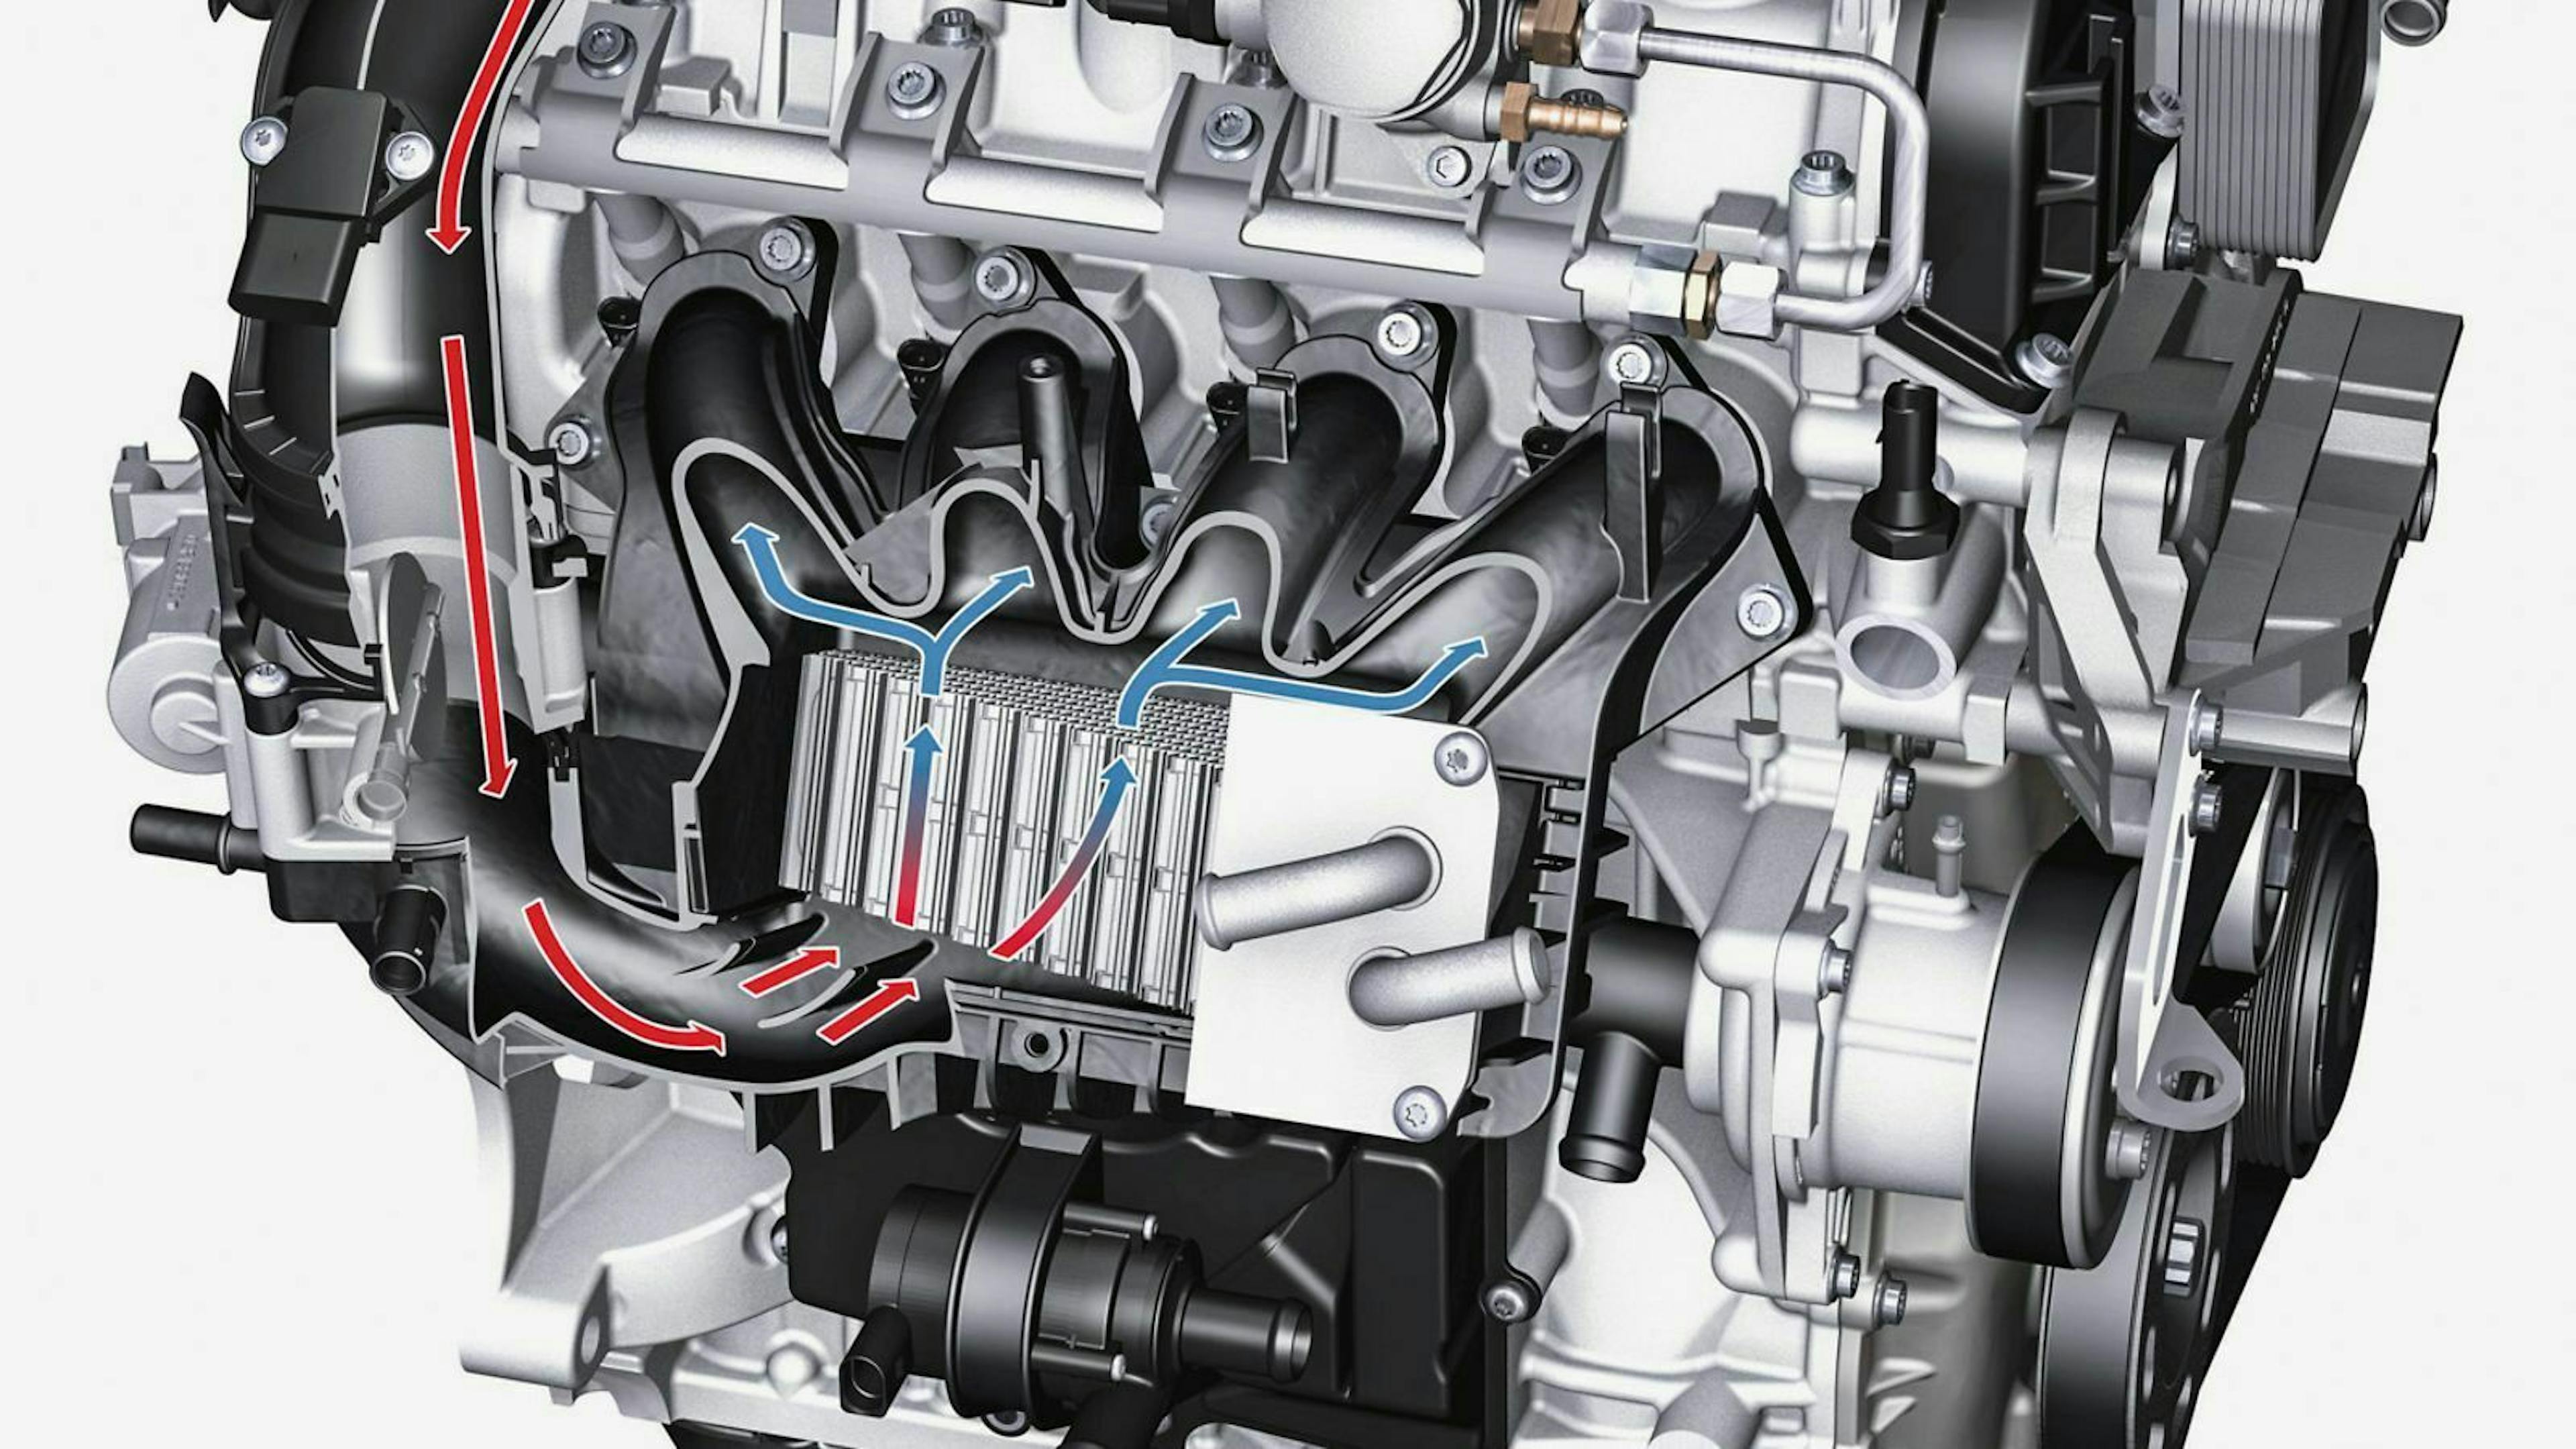 Durch die Kühlung – wie bei diesem VW-Motor – kann der Verbrauch gesenkt und die Leistung gesteigert werden.